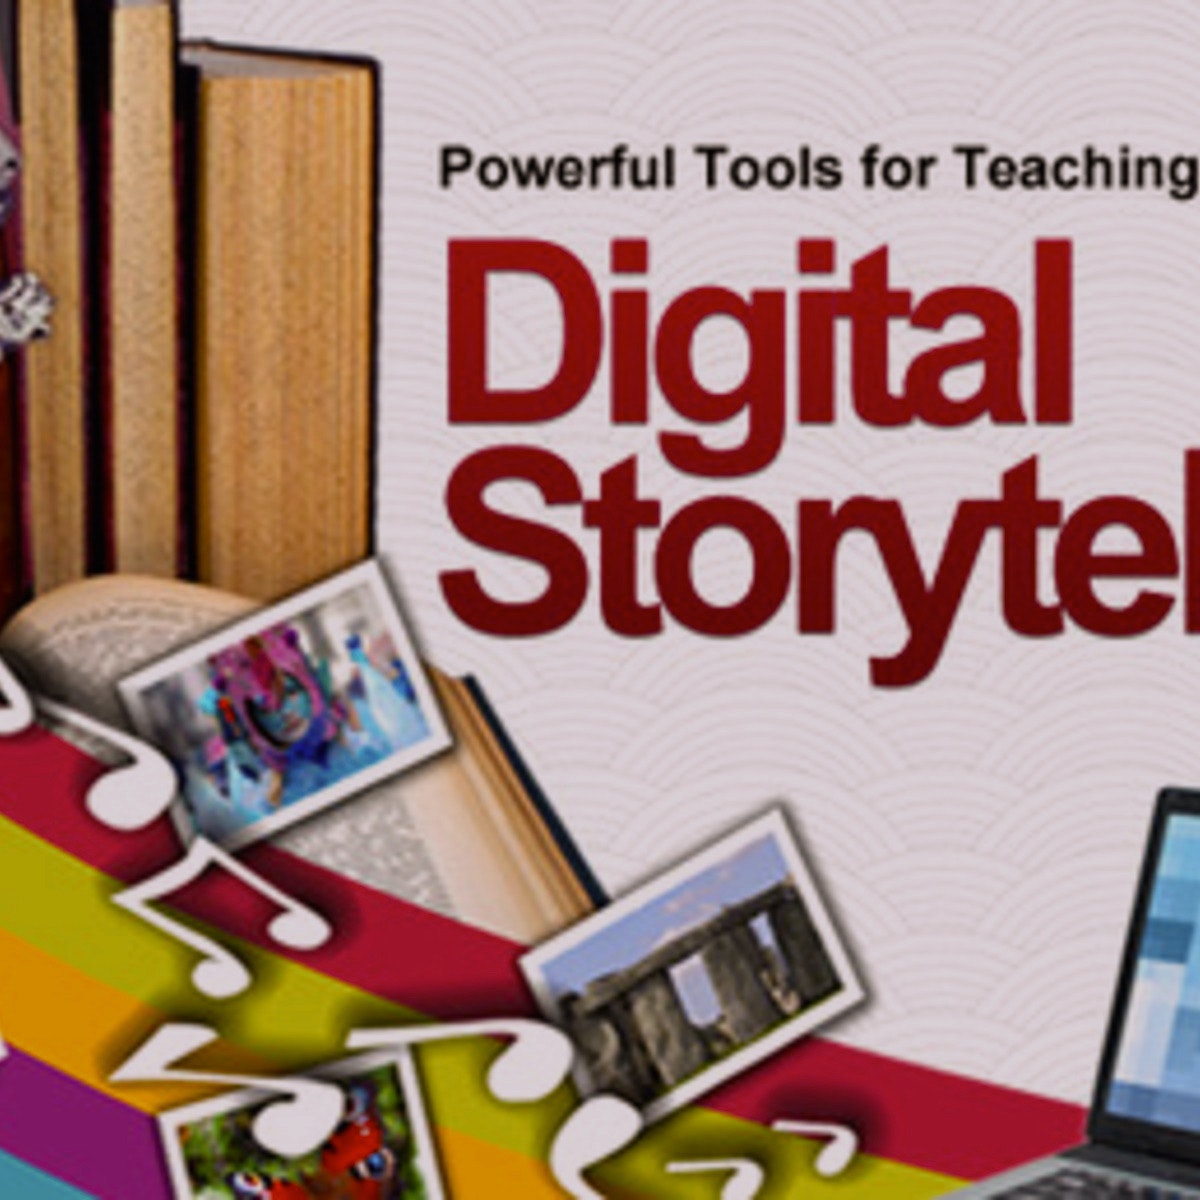 ابزارهای قدرتمند برای آموزش و یادگیری: داستان سرایی دیجیتال